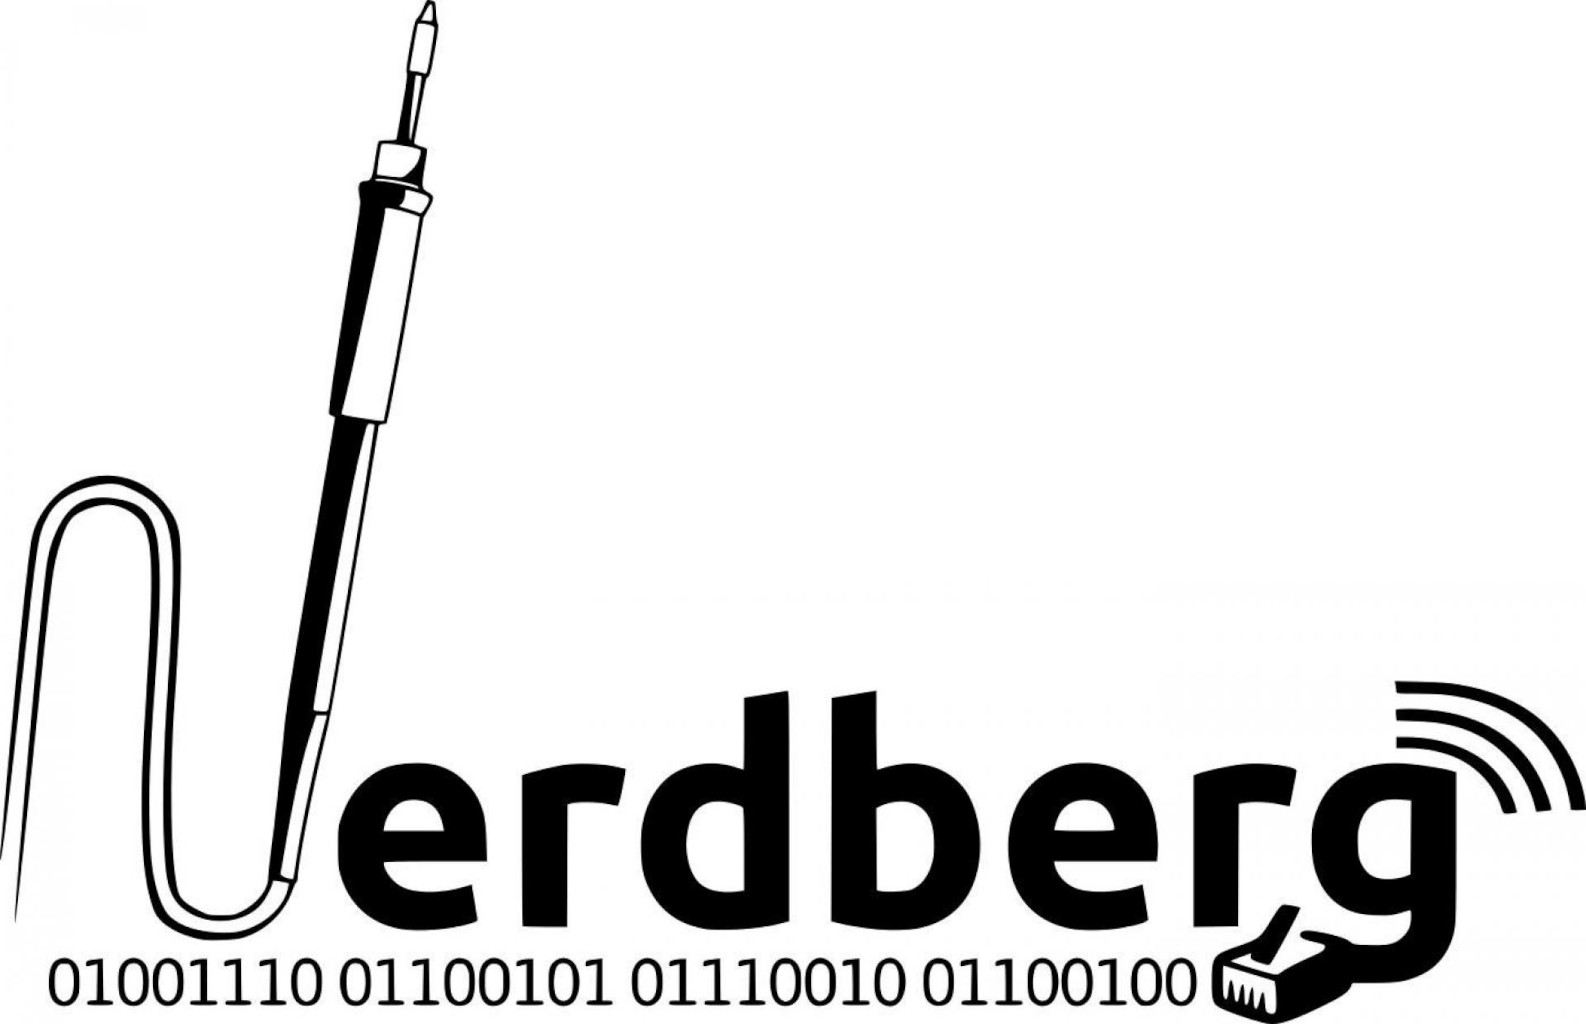 nerdberg_logo_scaled.jpeg